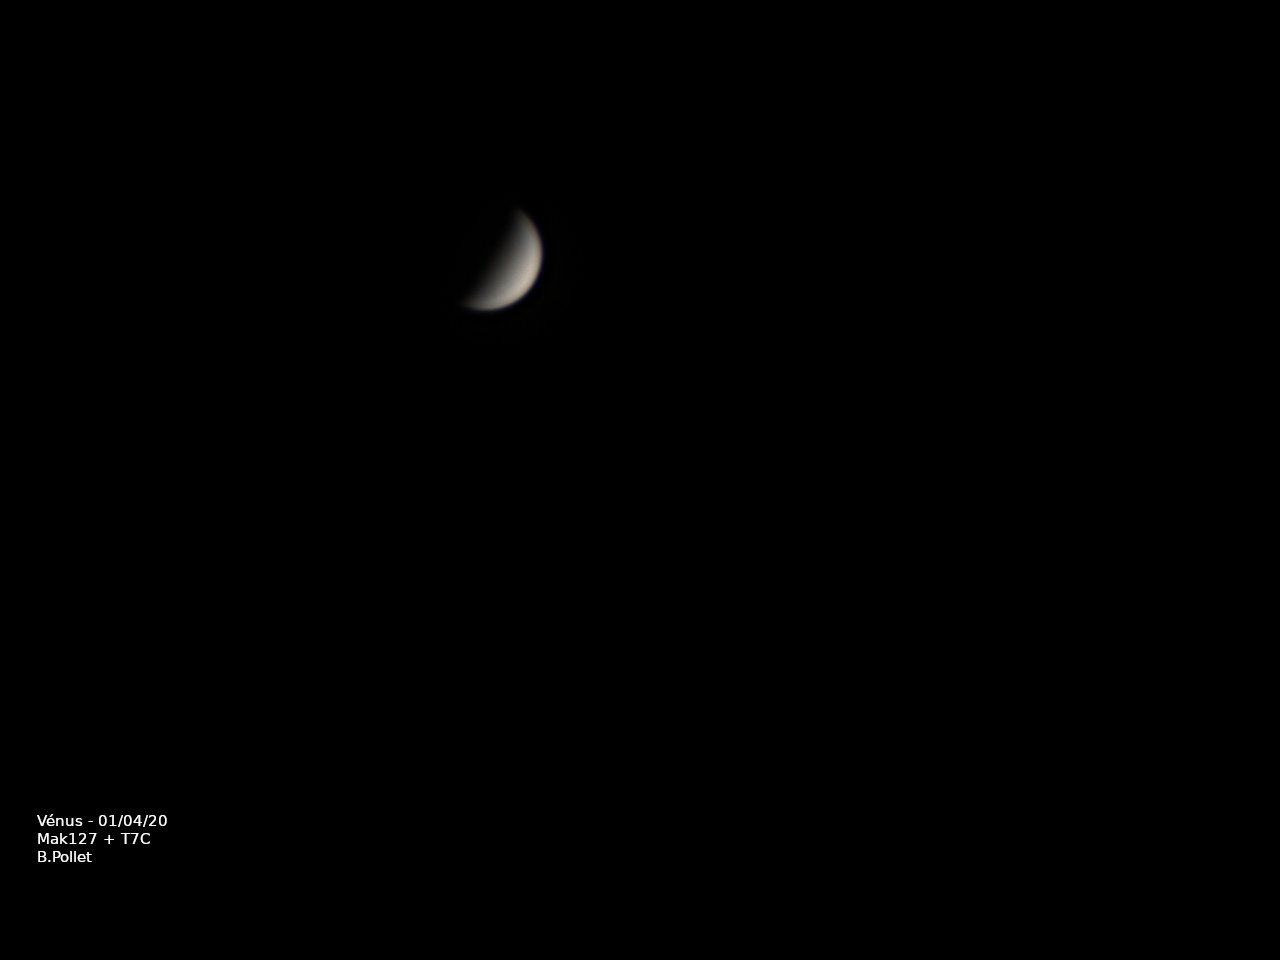 2020-04-01_Venus-txt.jpg